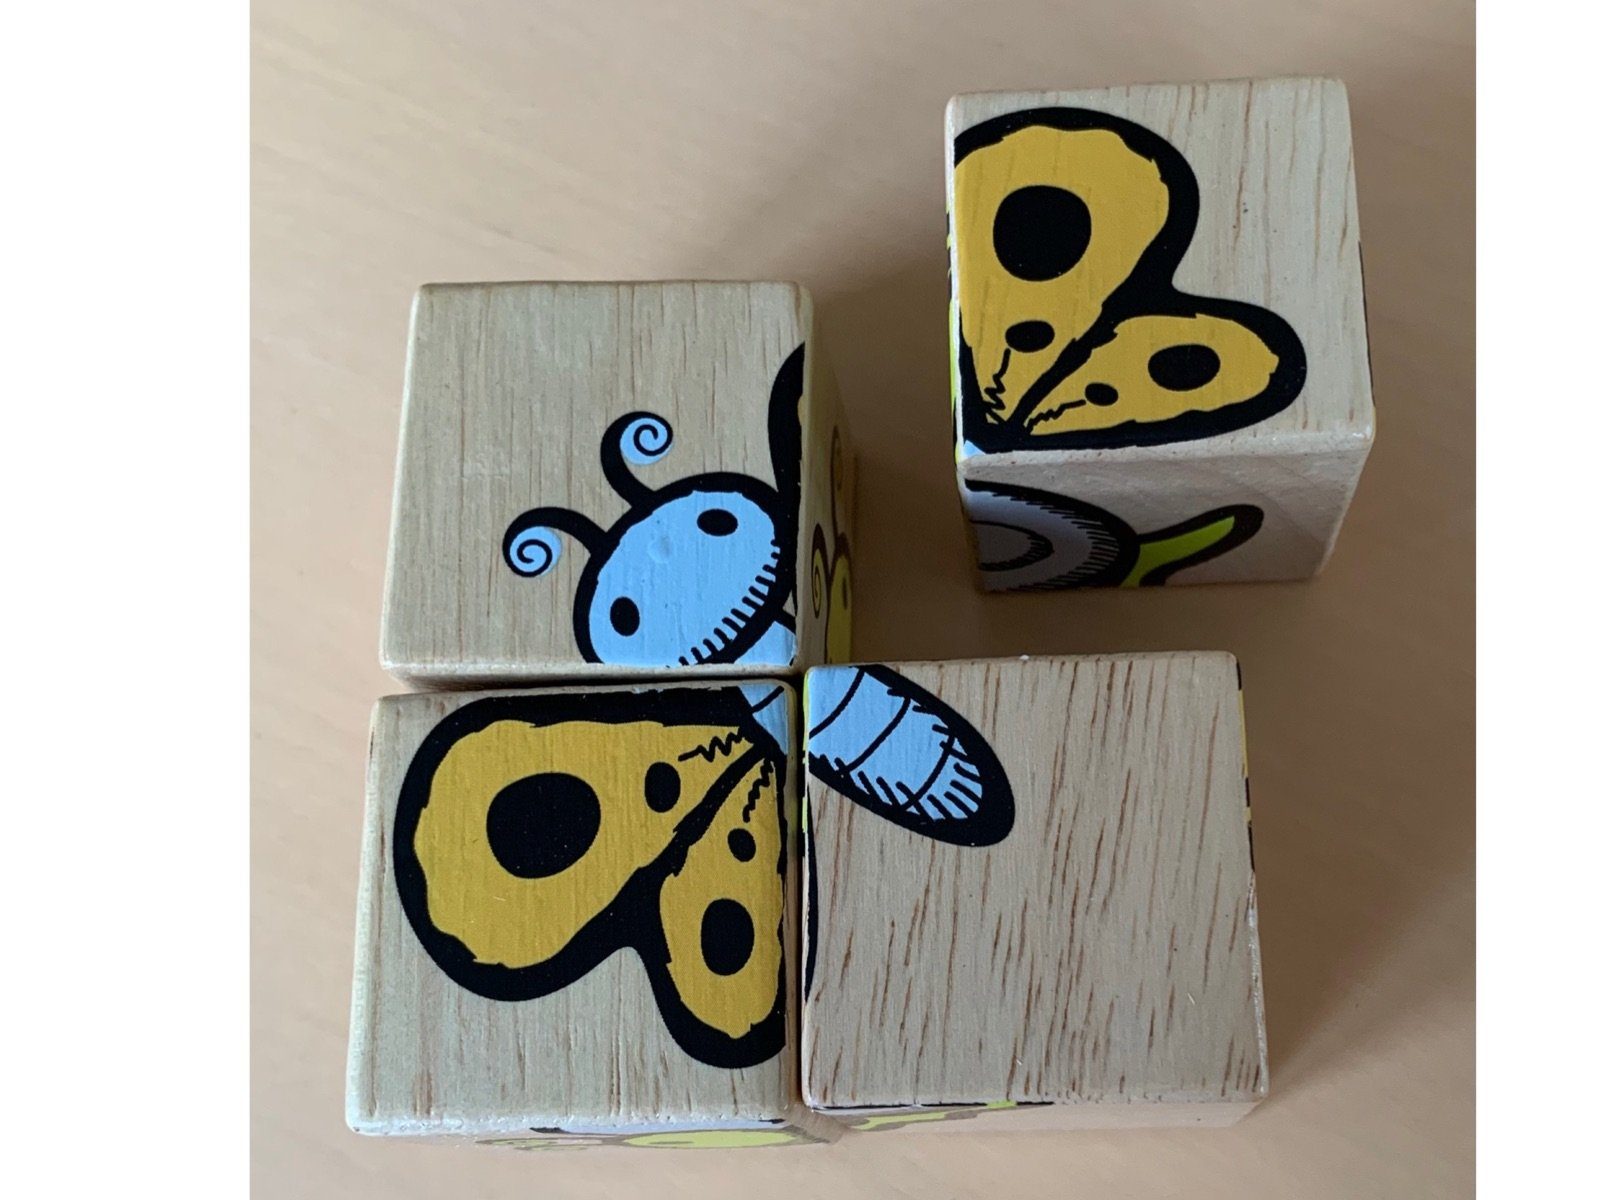 Holz Puzzle und Puzzle, gewonnenen 4 Tiere, schönes aus Anfänger Puzzleteile, & Trend Style Gummibaum einem Biene Würfel LK In verschiedene Holzpuzzle nachhaltig Freunde